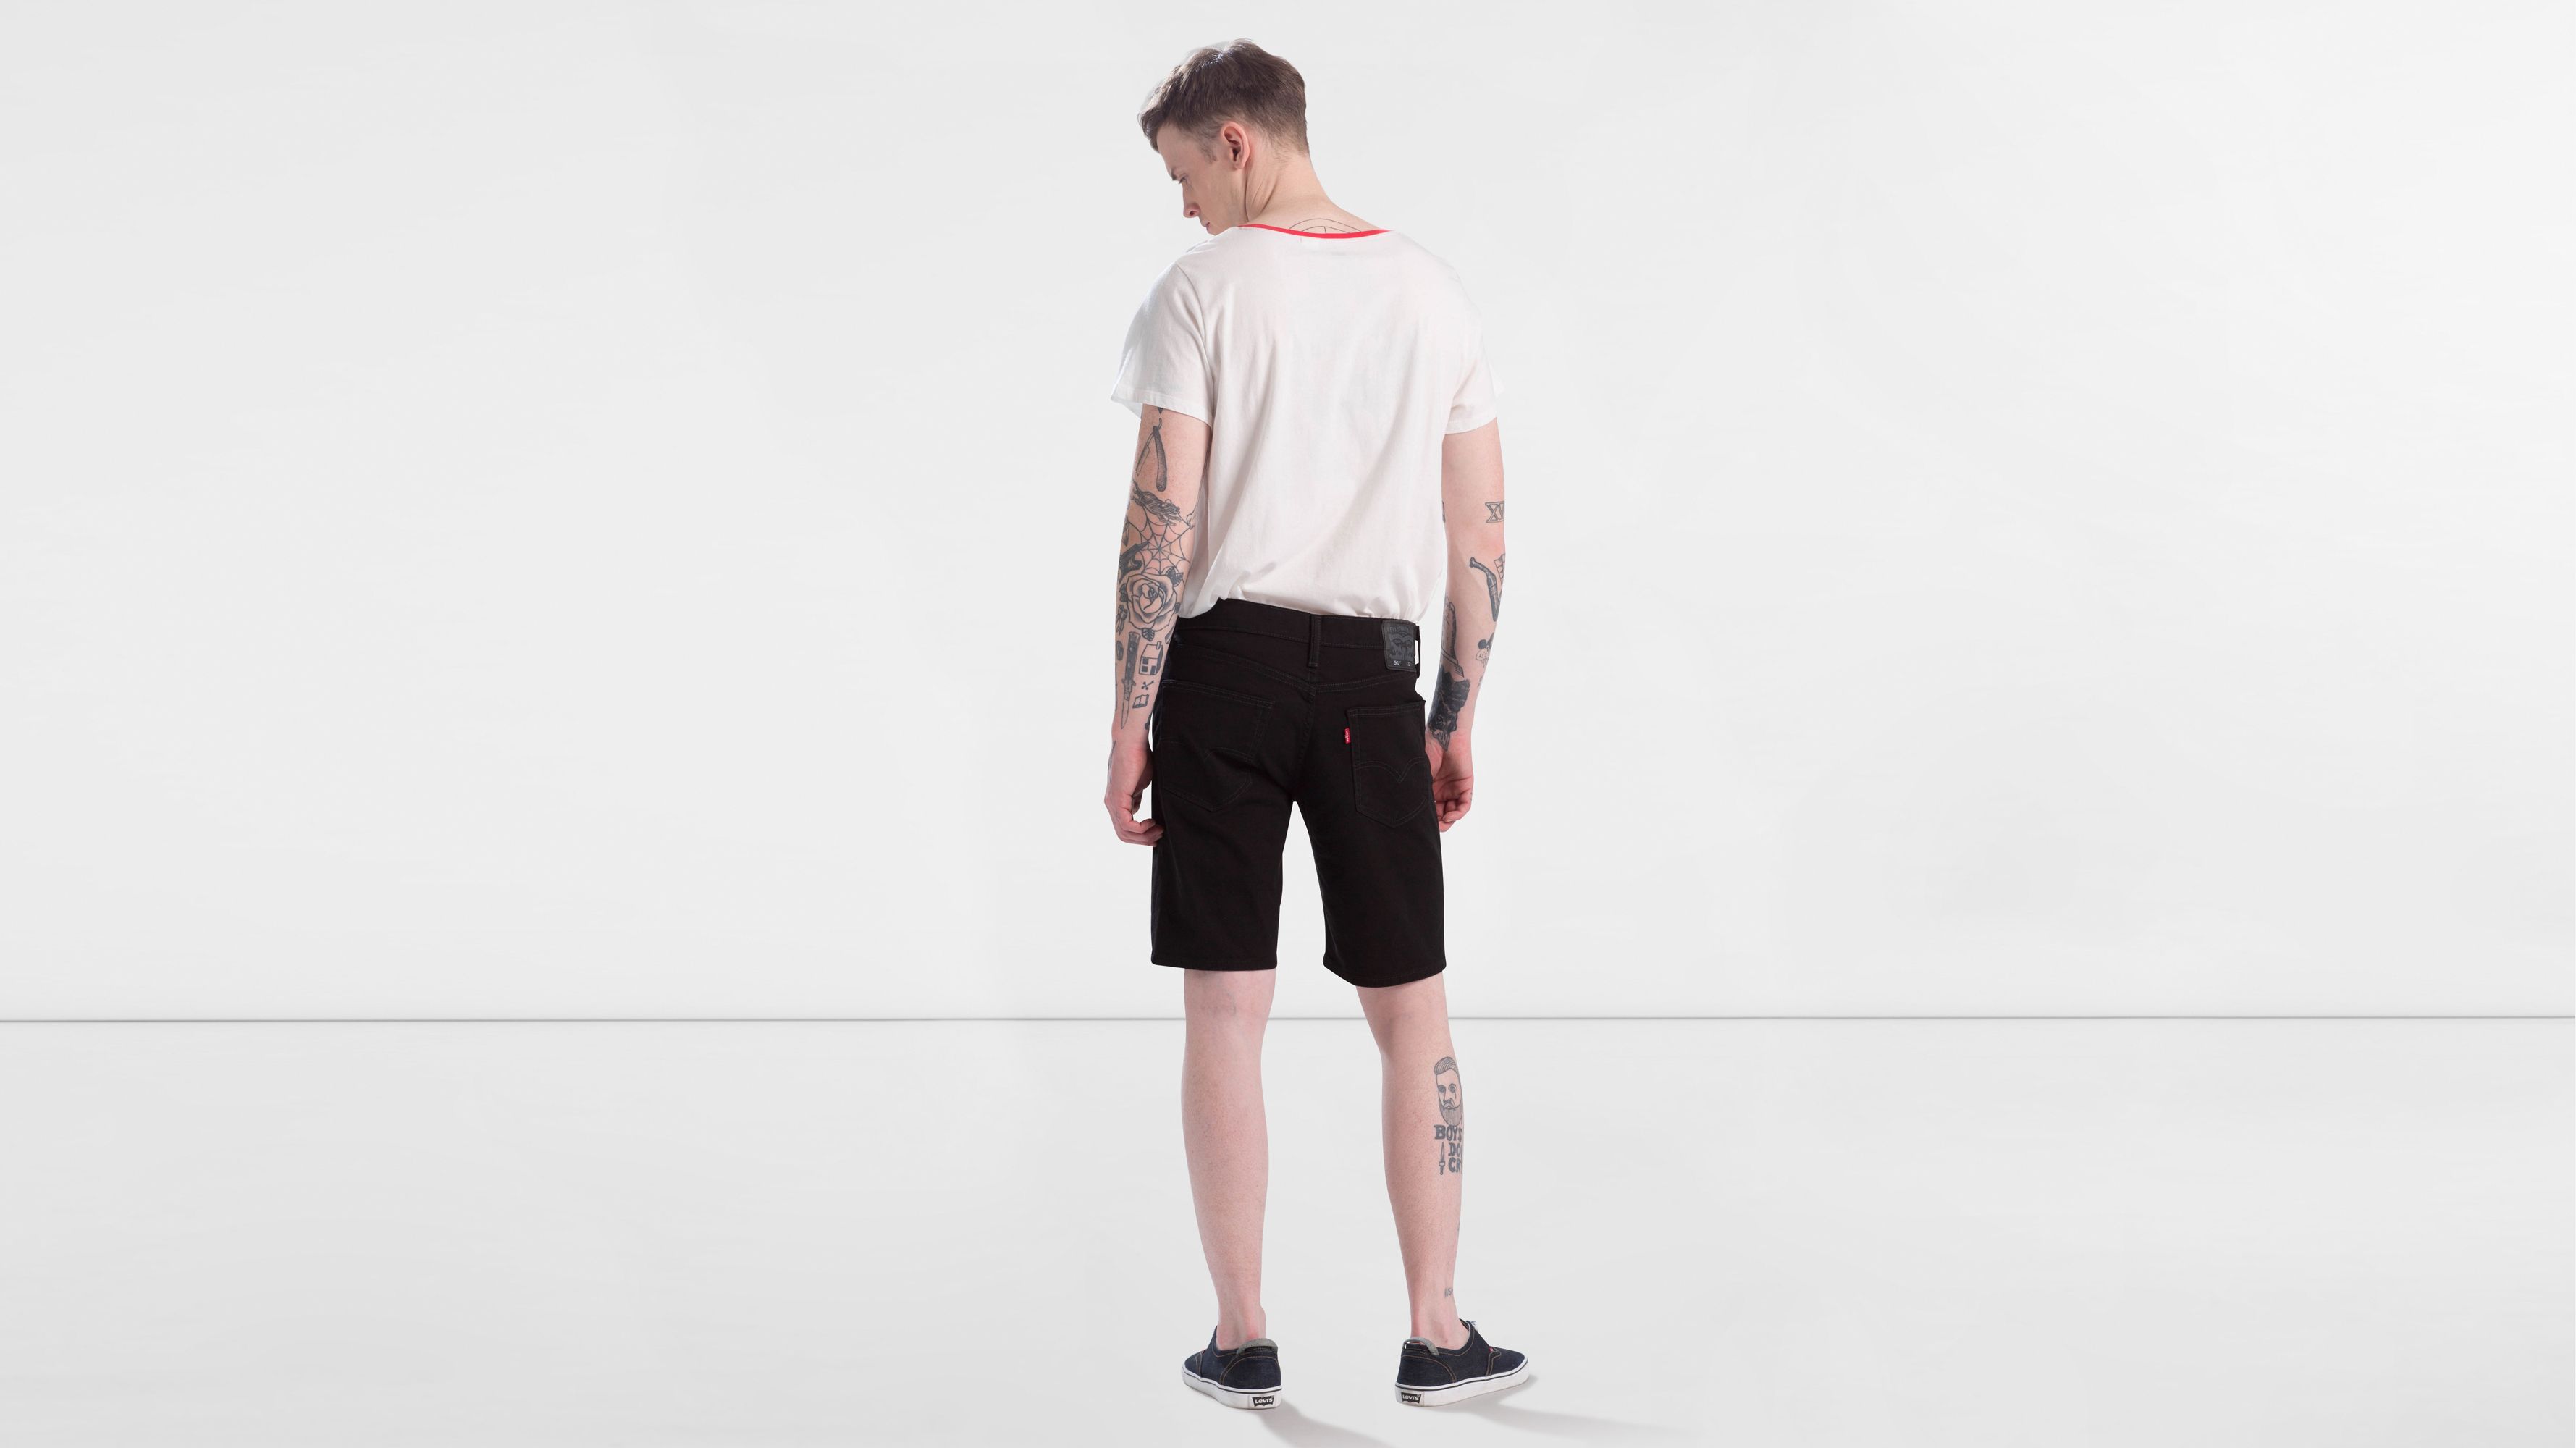 levis 502 shorts black